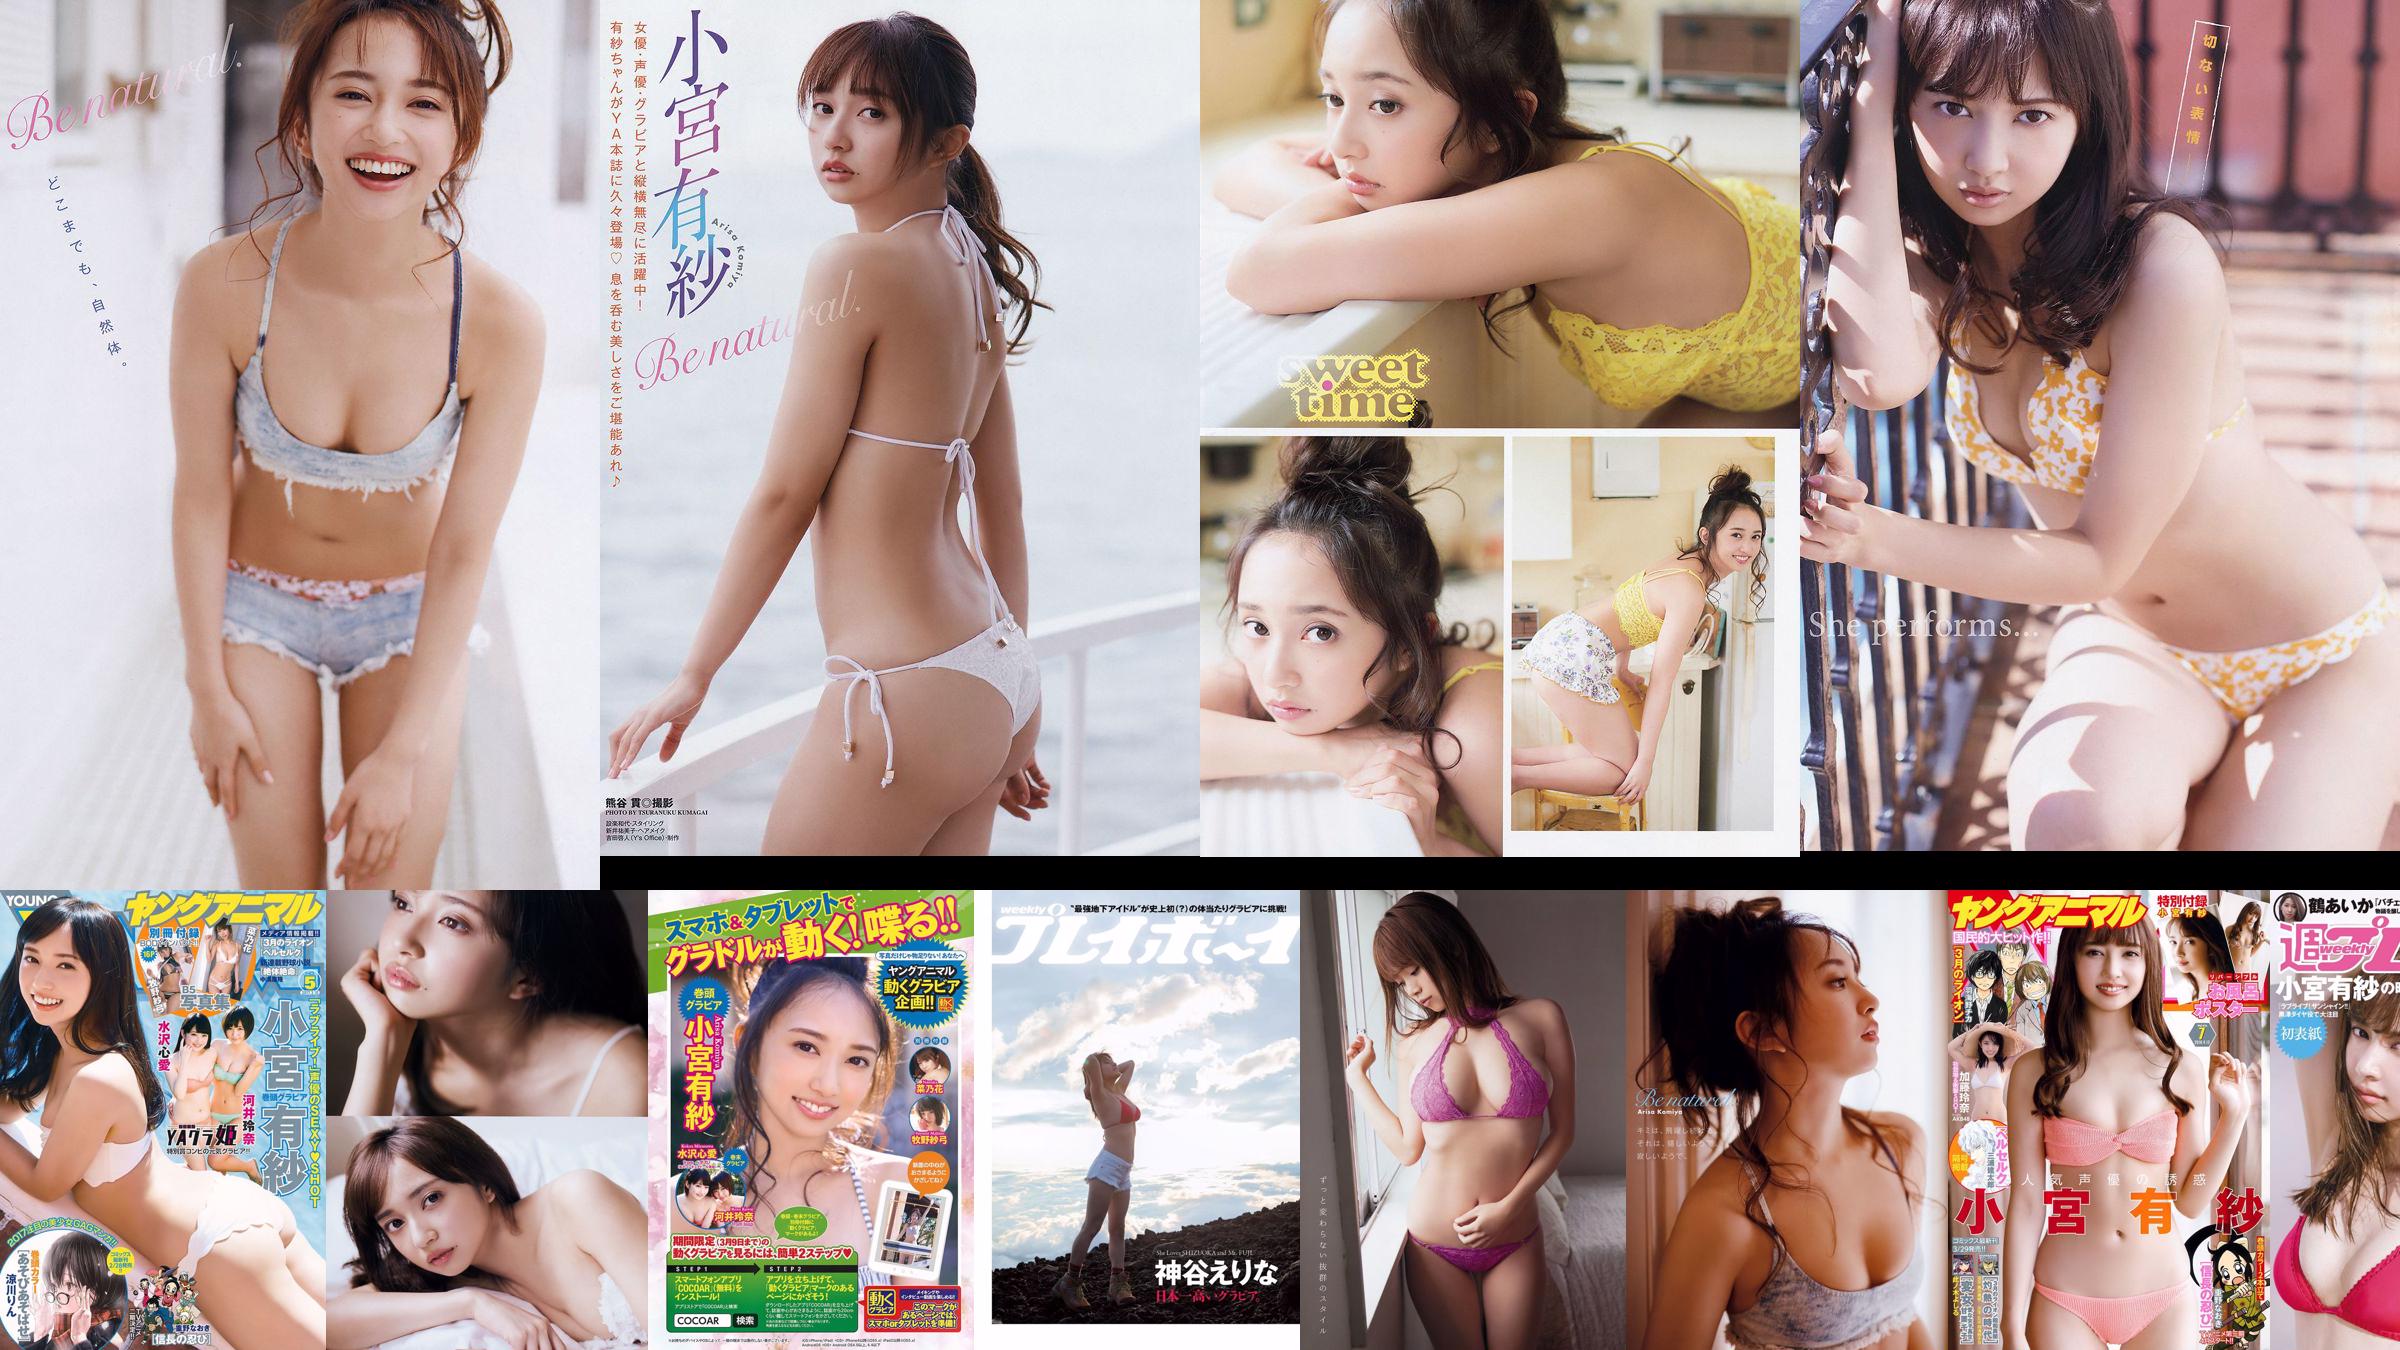 Arisa Komiya Aika Tsuru Sayaka Isoyama Kasumi Arimura Rina Otomo Sei Shiraishi Erina Kamiya [Wekelijkse Playboy] 2017 No.41 foto No.8c8276 Pagina 7